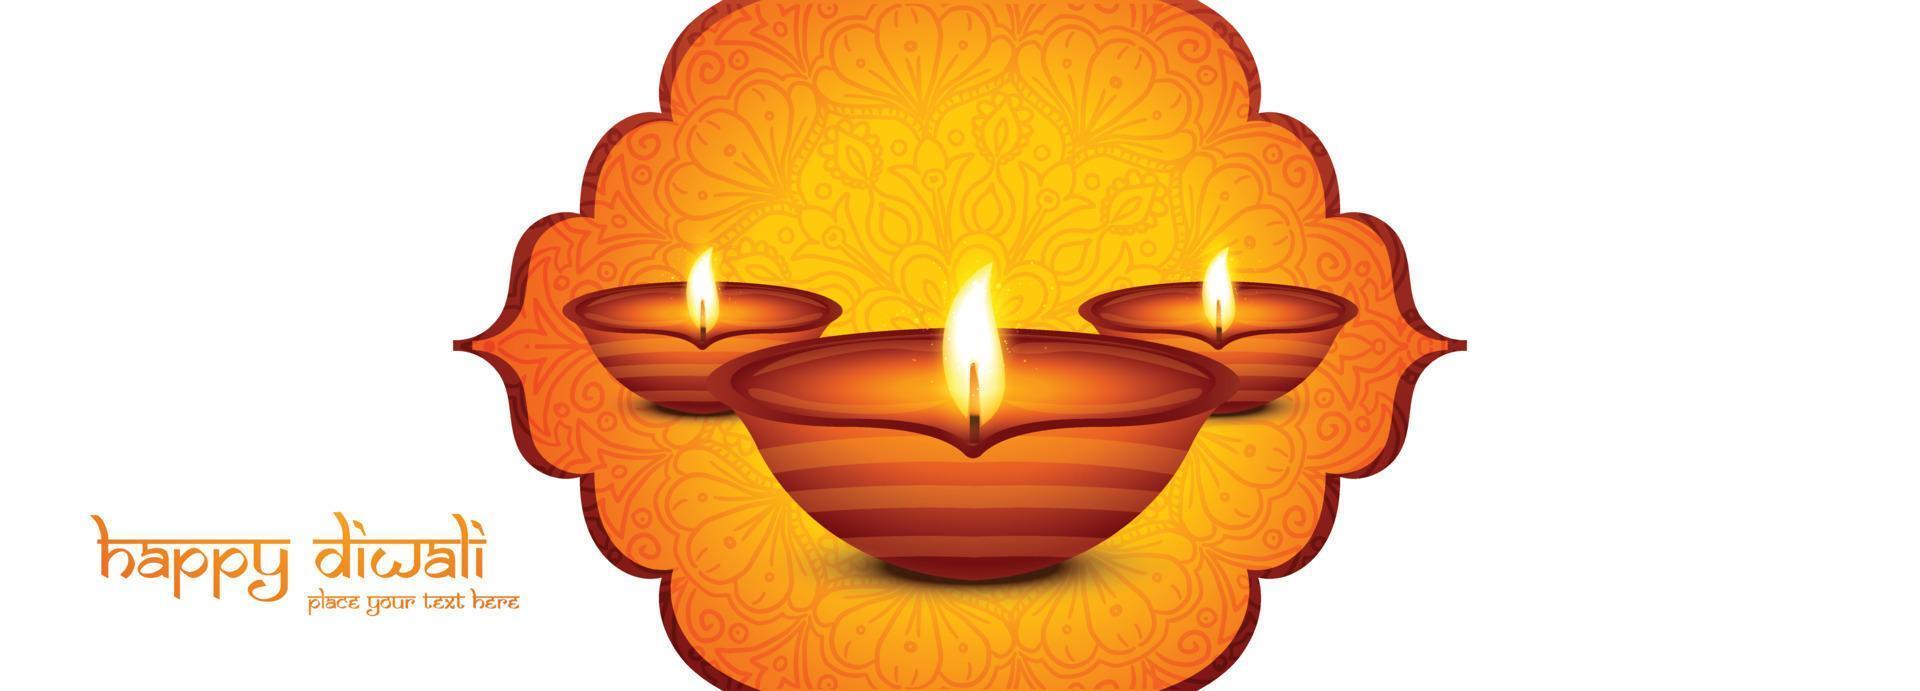 Lycklig diwali festival av ljus med olja lampa firande baner bakgrund vektor